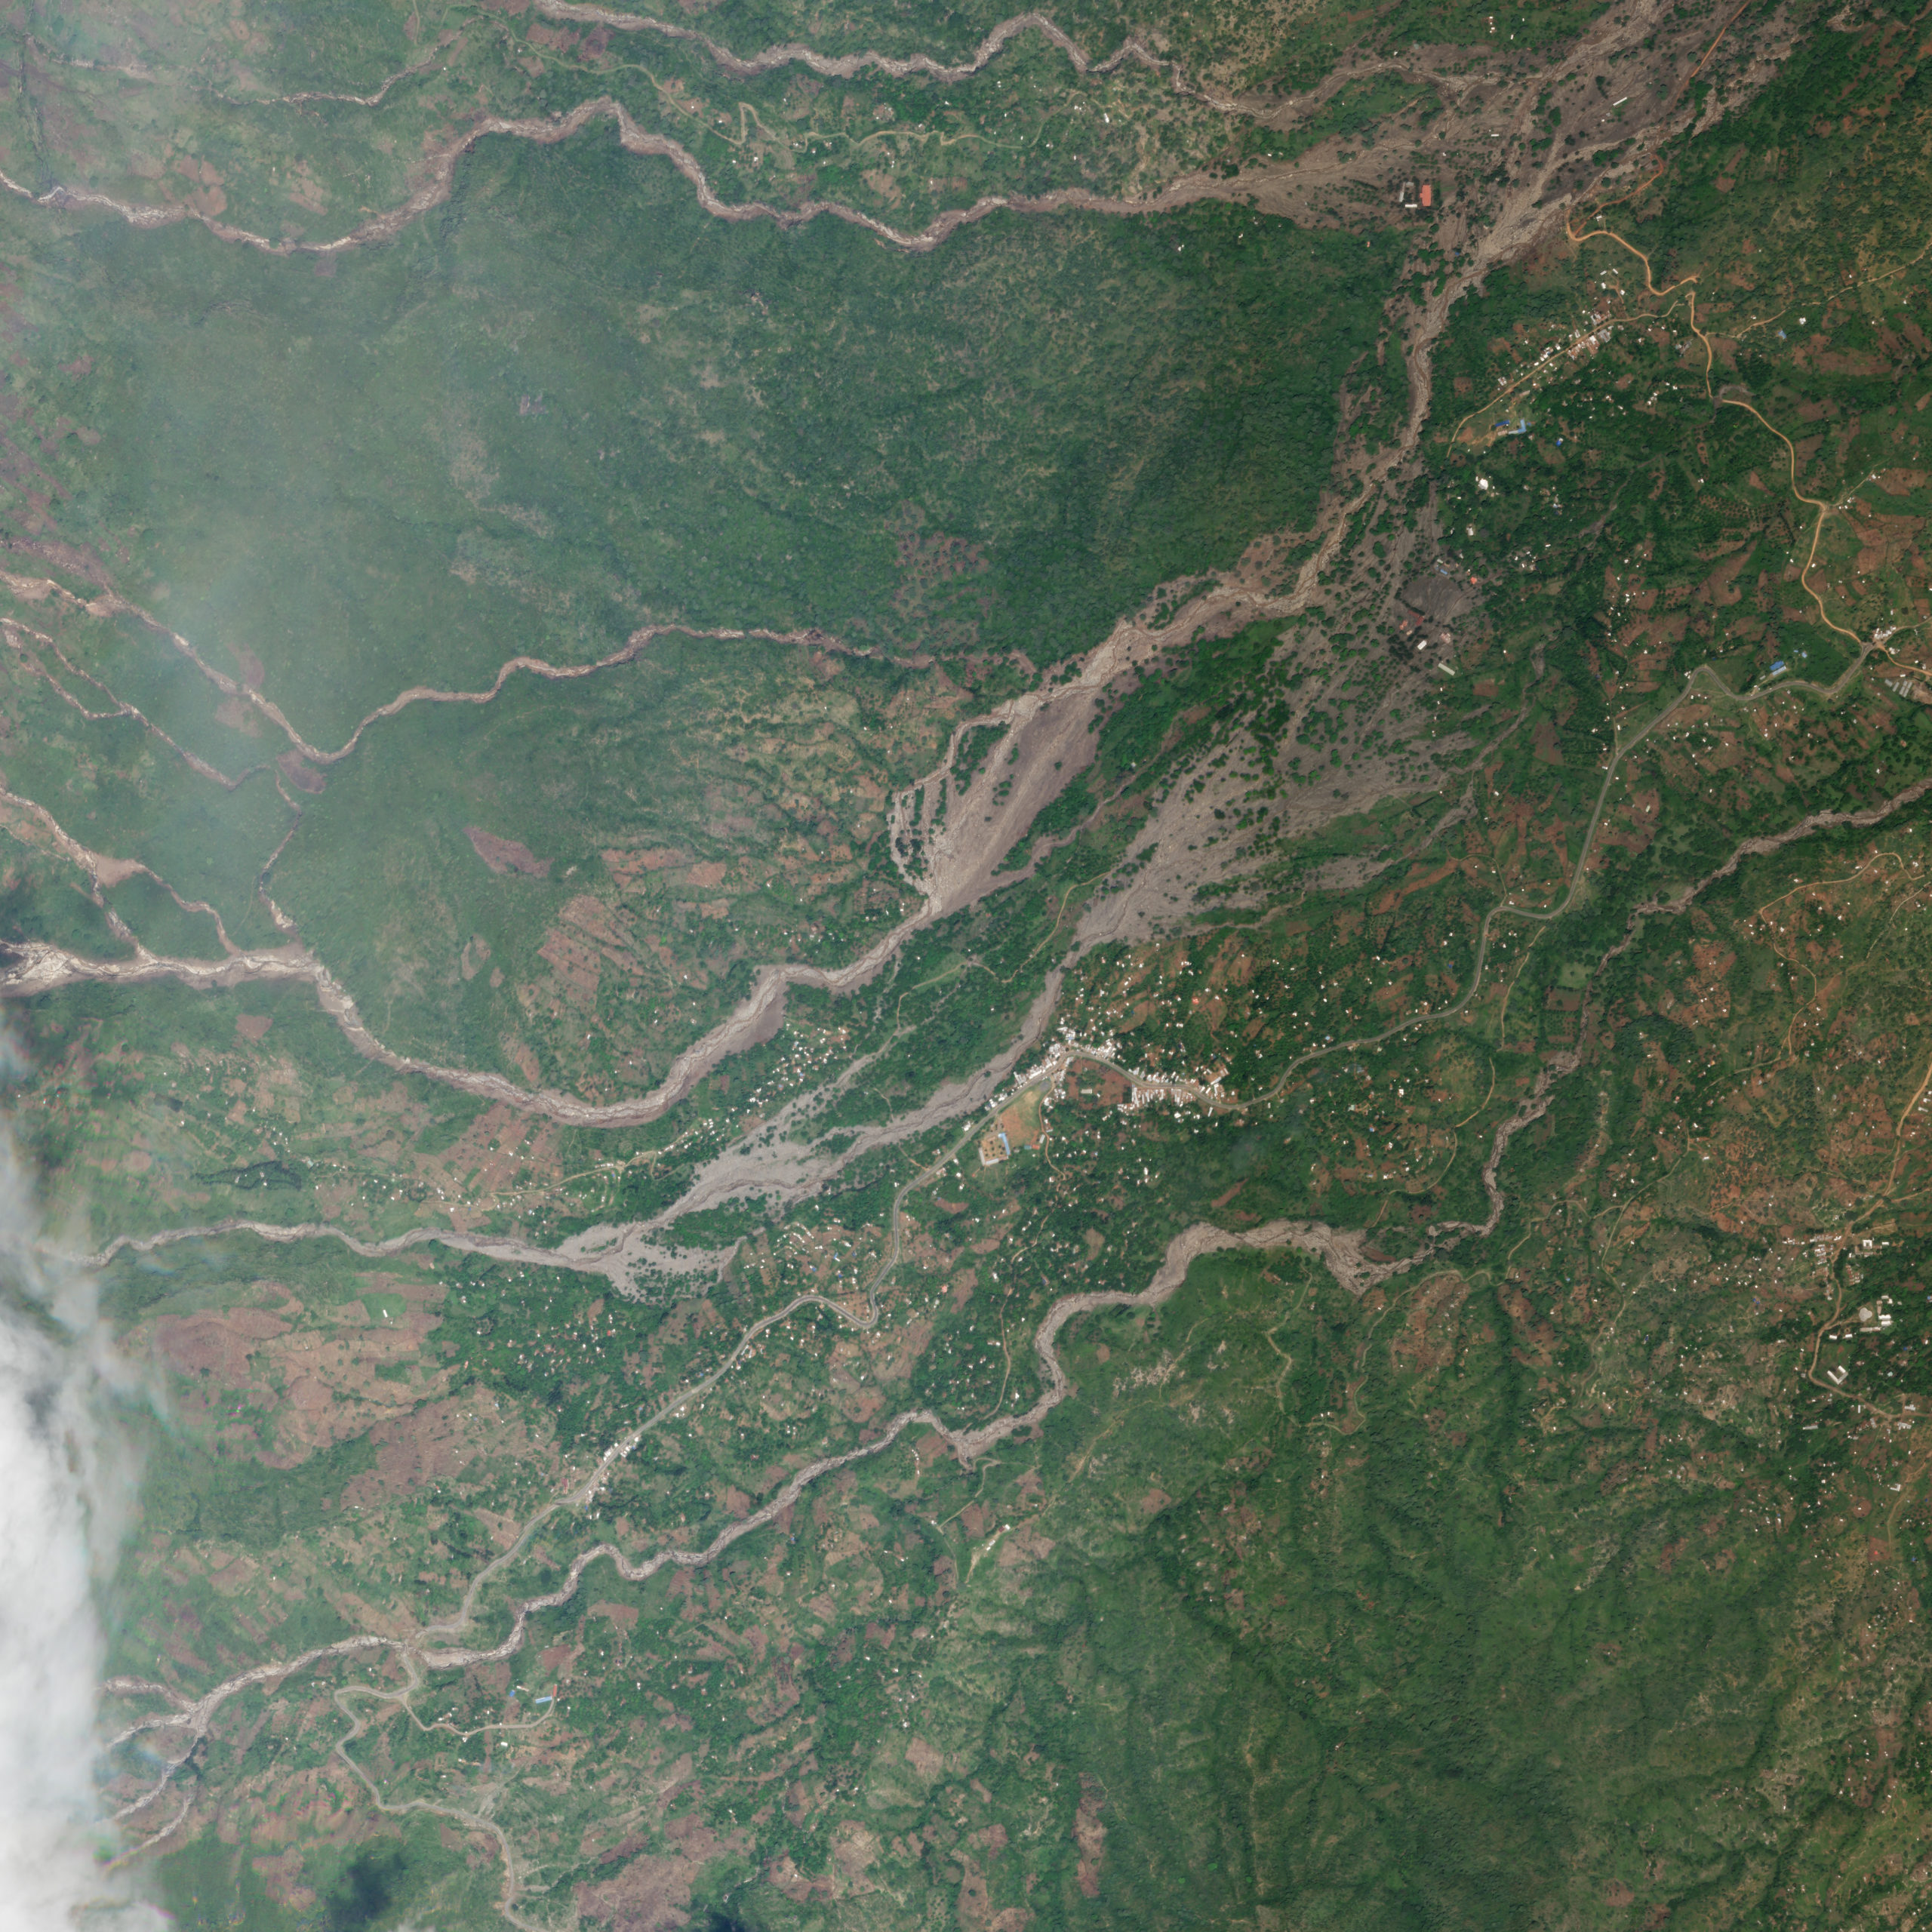 Chesegon, West Pokot landslides